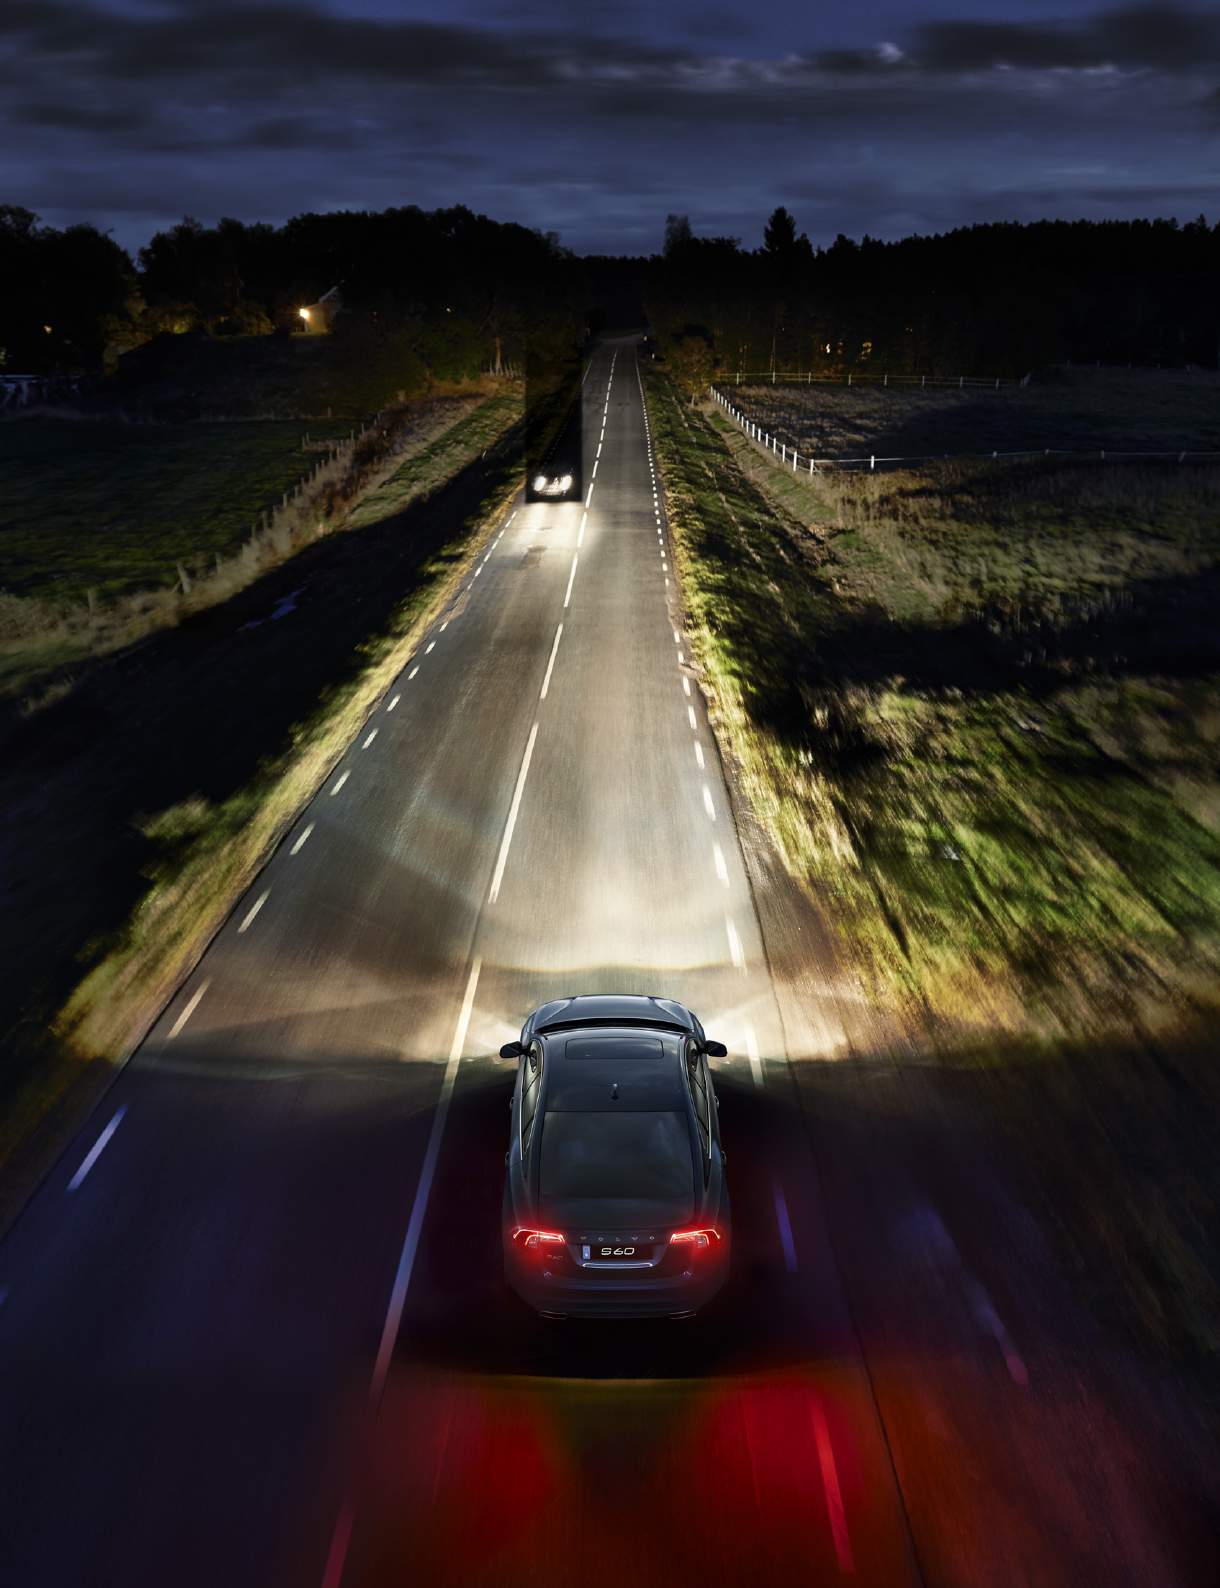 Ilumina la oscuridad. Conducir de noche ahora es mucho más agradable y seguro. Nuestra Luz Larga Activa mantiene activada la luz larga en todo momento.